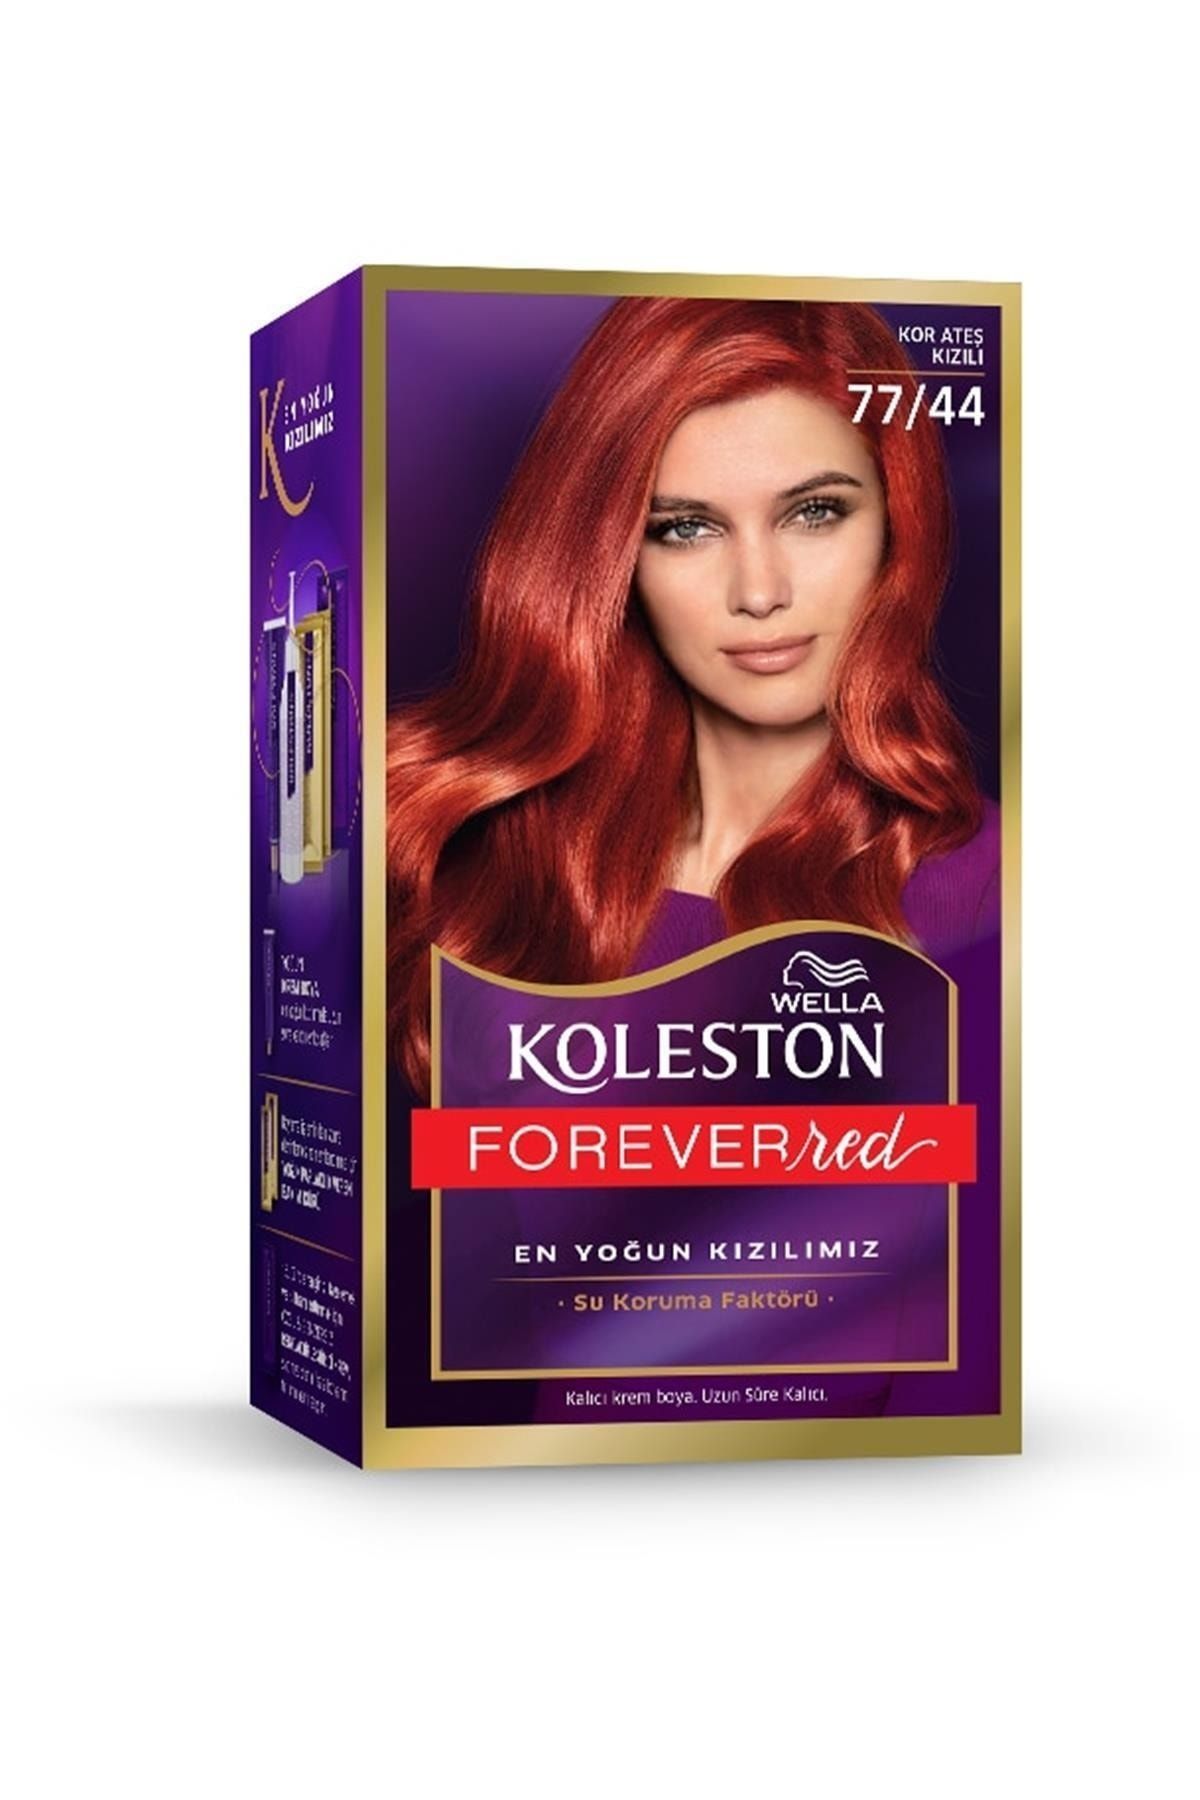 Wella Marka: Koleston Kit Boya 77/44 Kor Ateş Kızılı Kategori: Saç Boyası